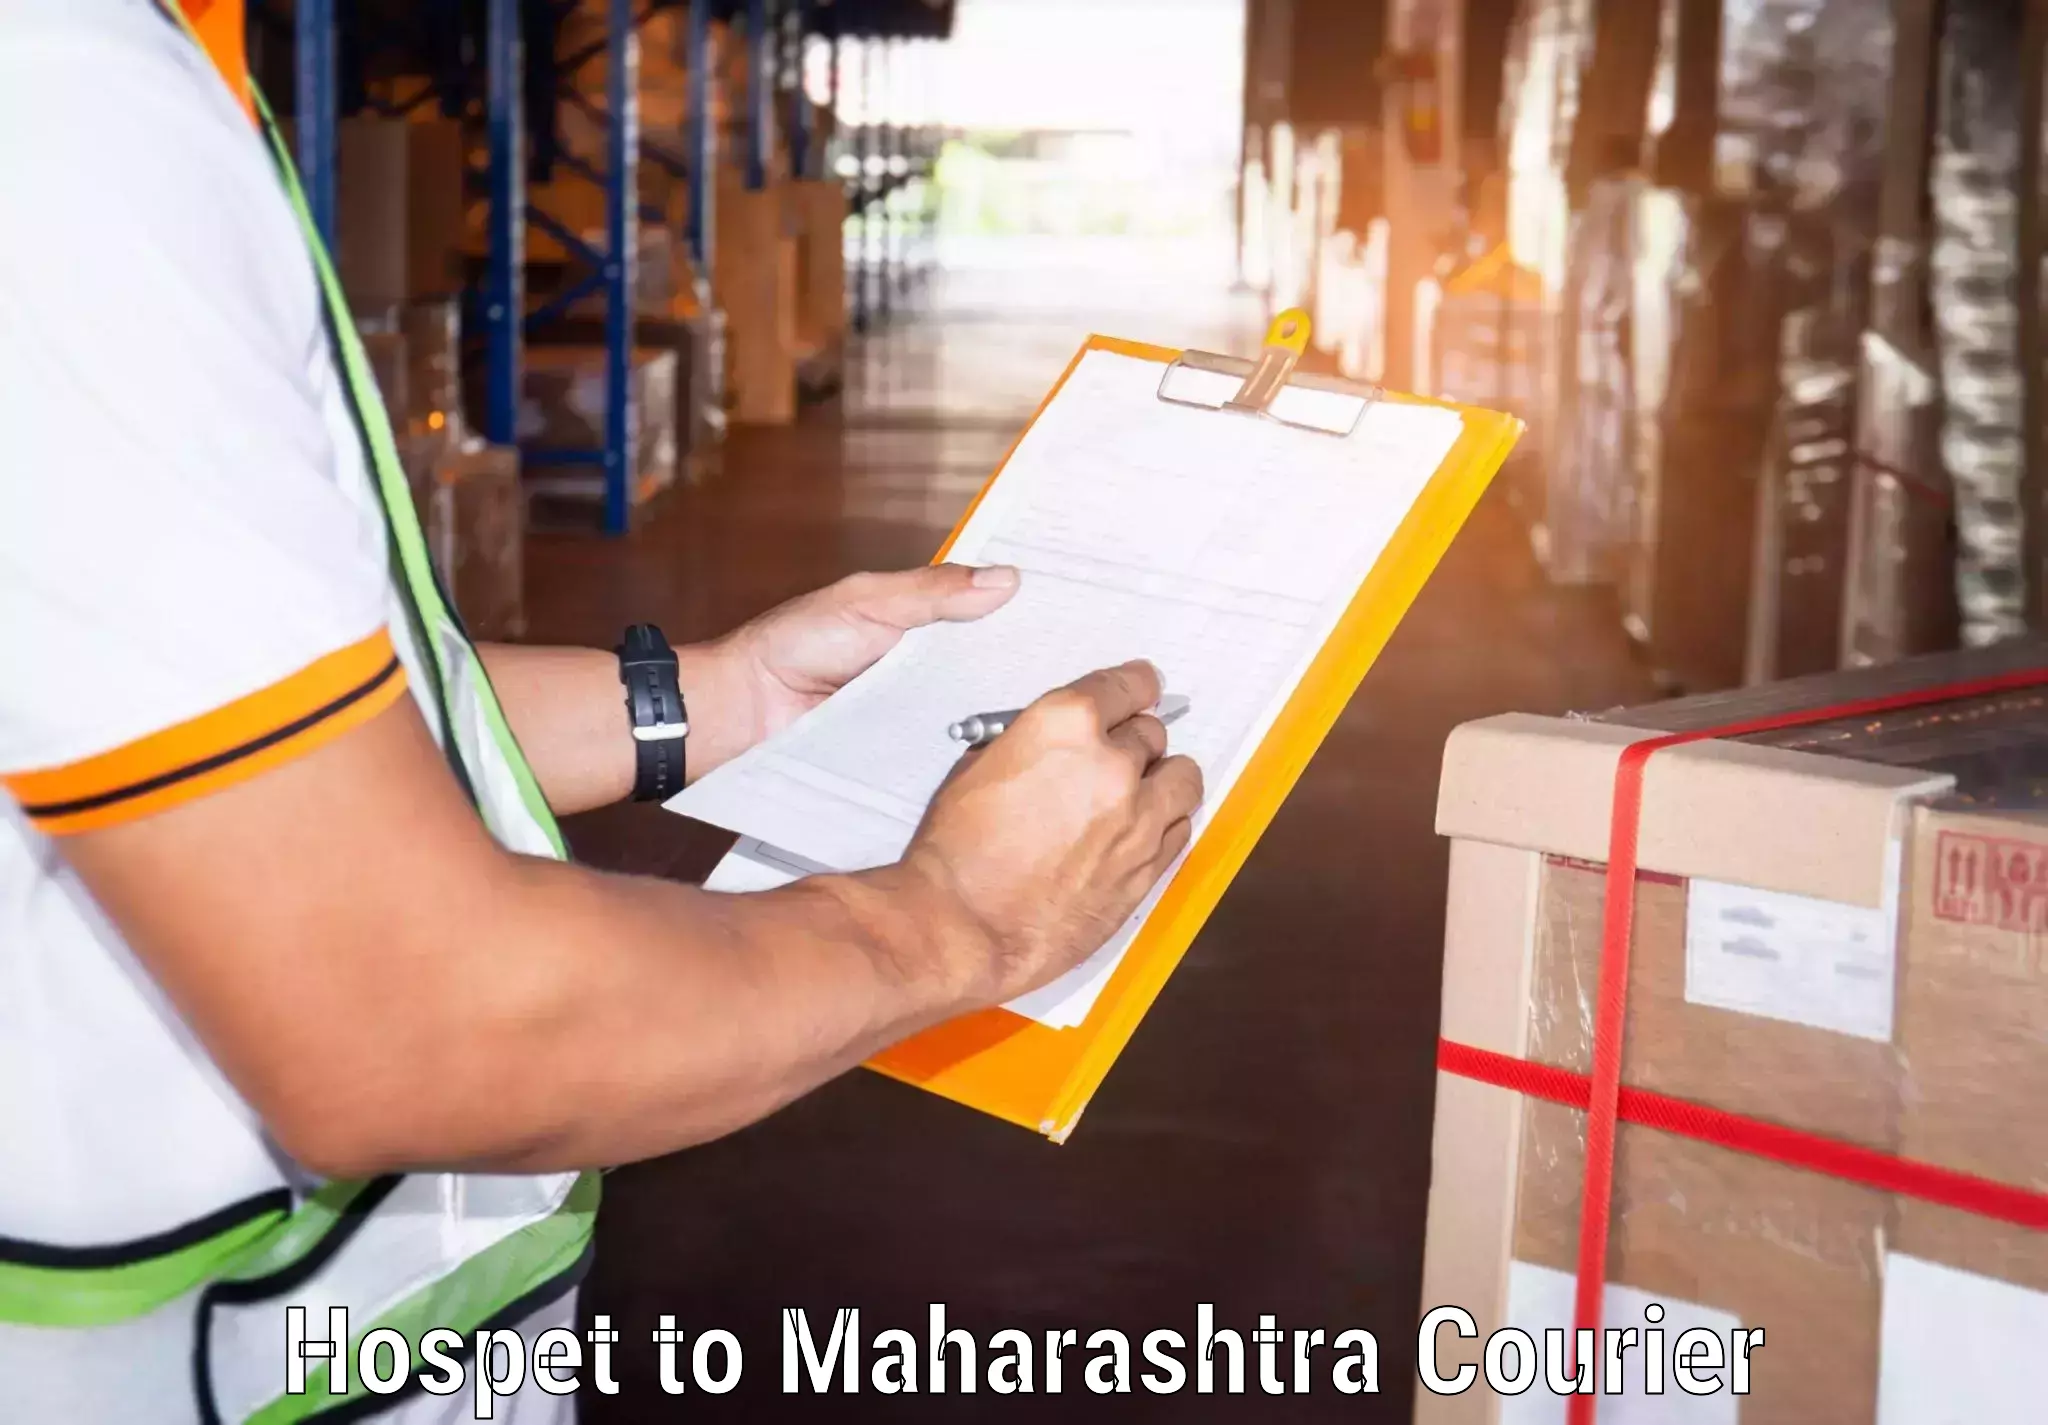 Advanced shipping services Hospet to Maharashtra